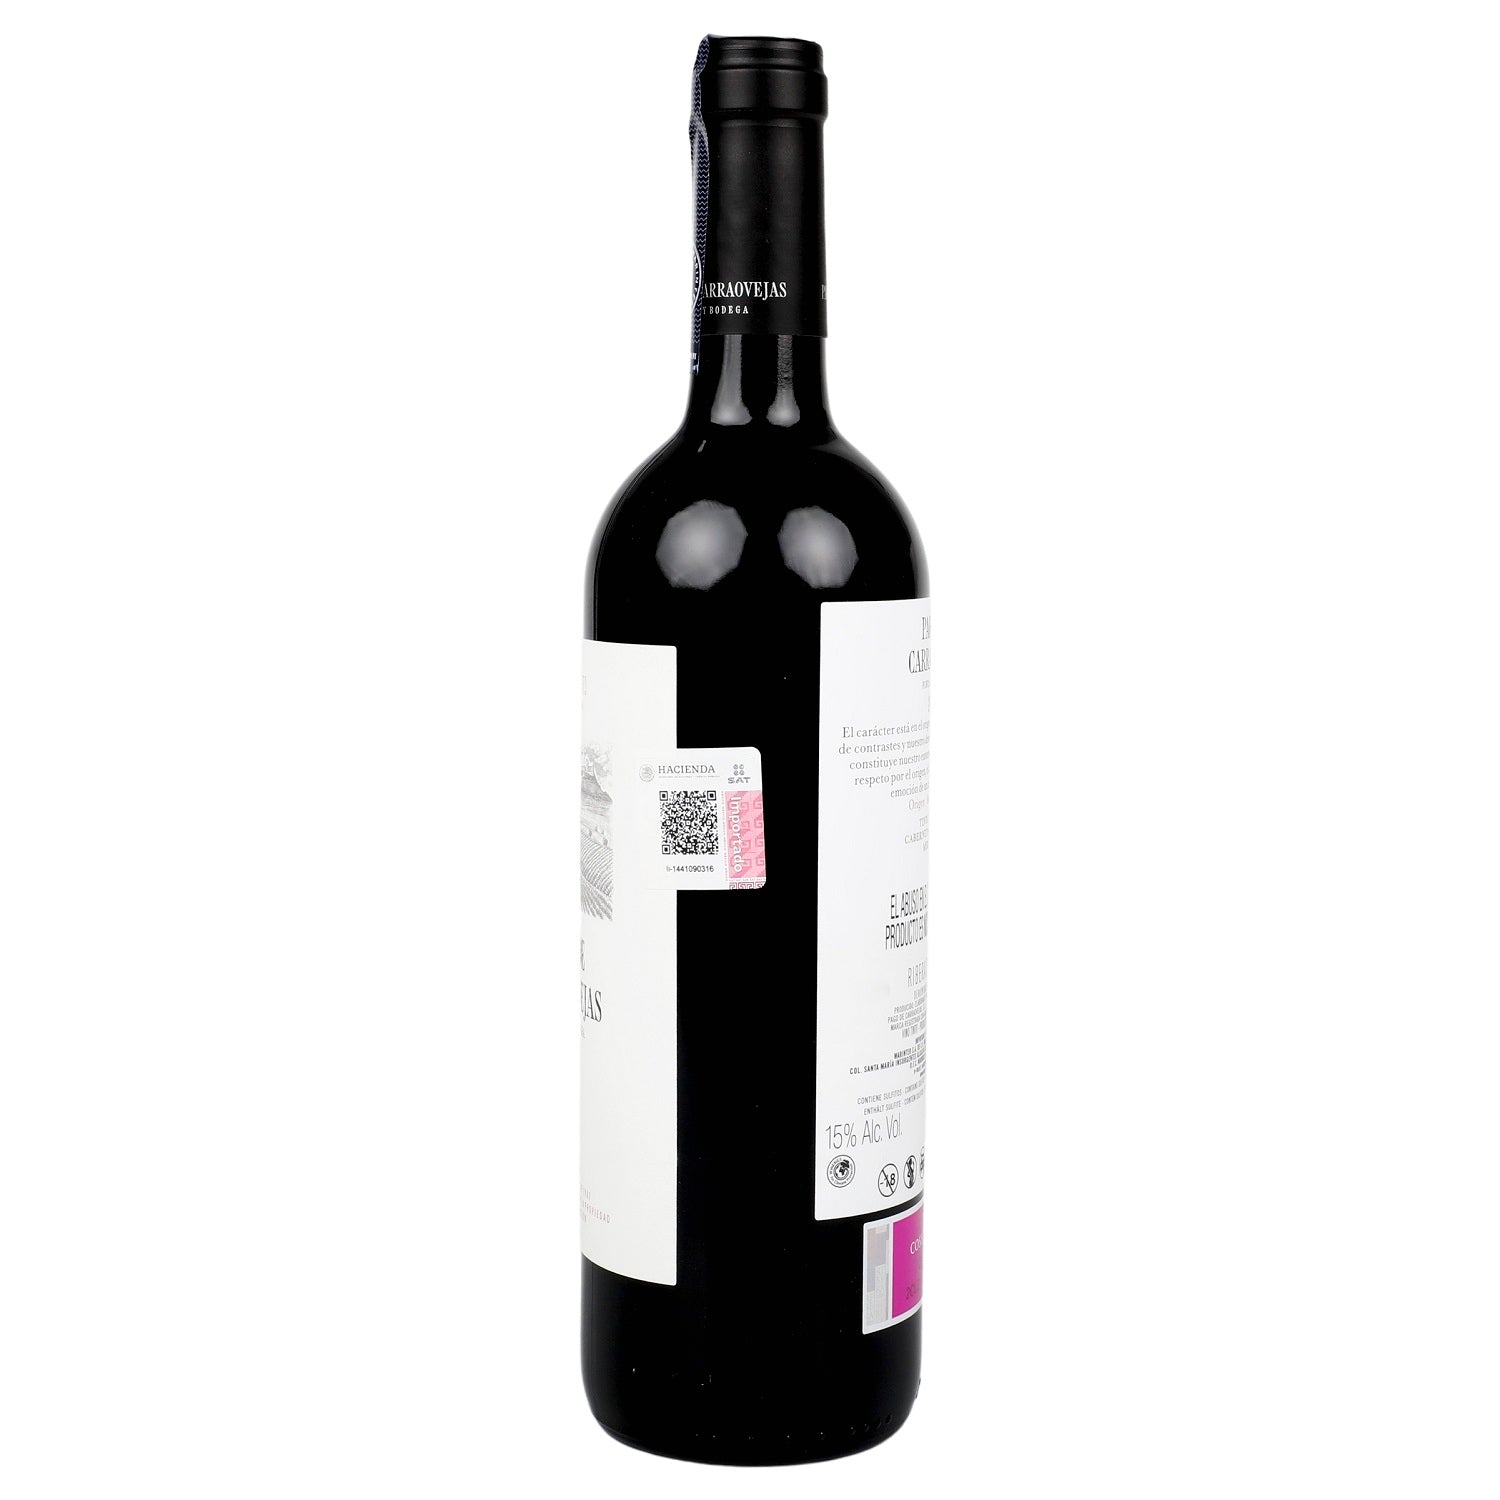 Vino Tinto Pago de Carraovejas 2019 de 750 ml